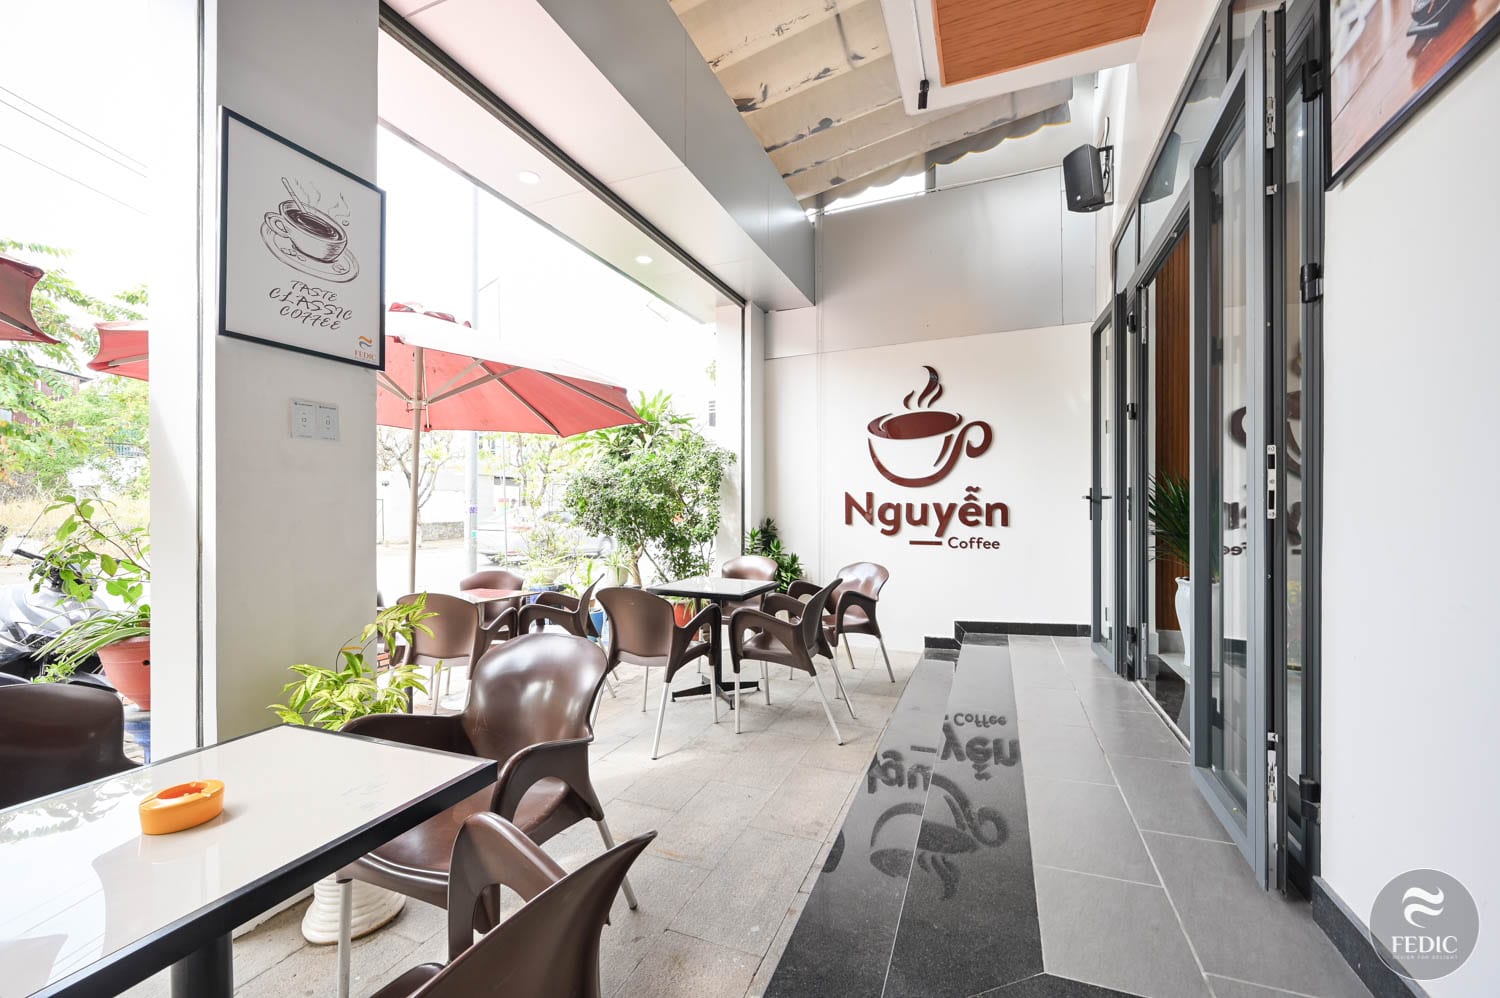 Noi that Nguyen Coffee-Fedic